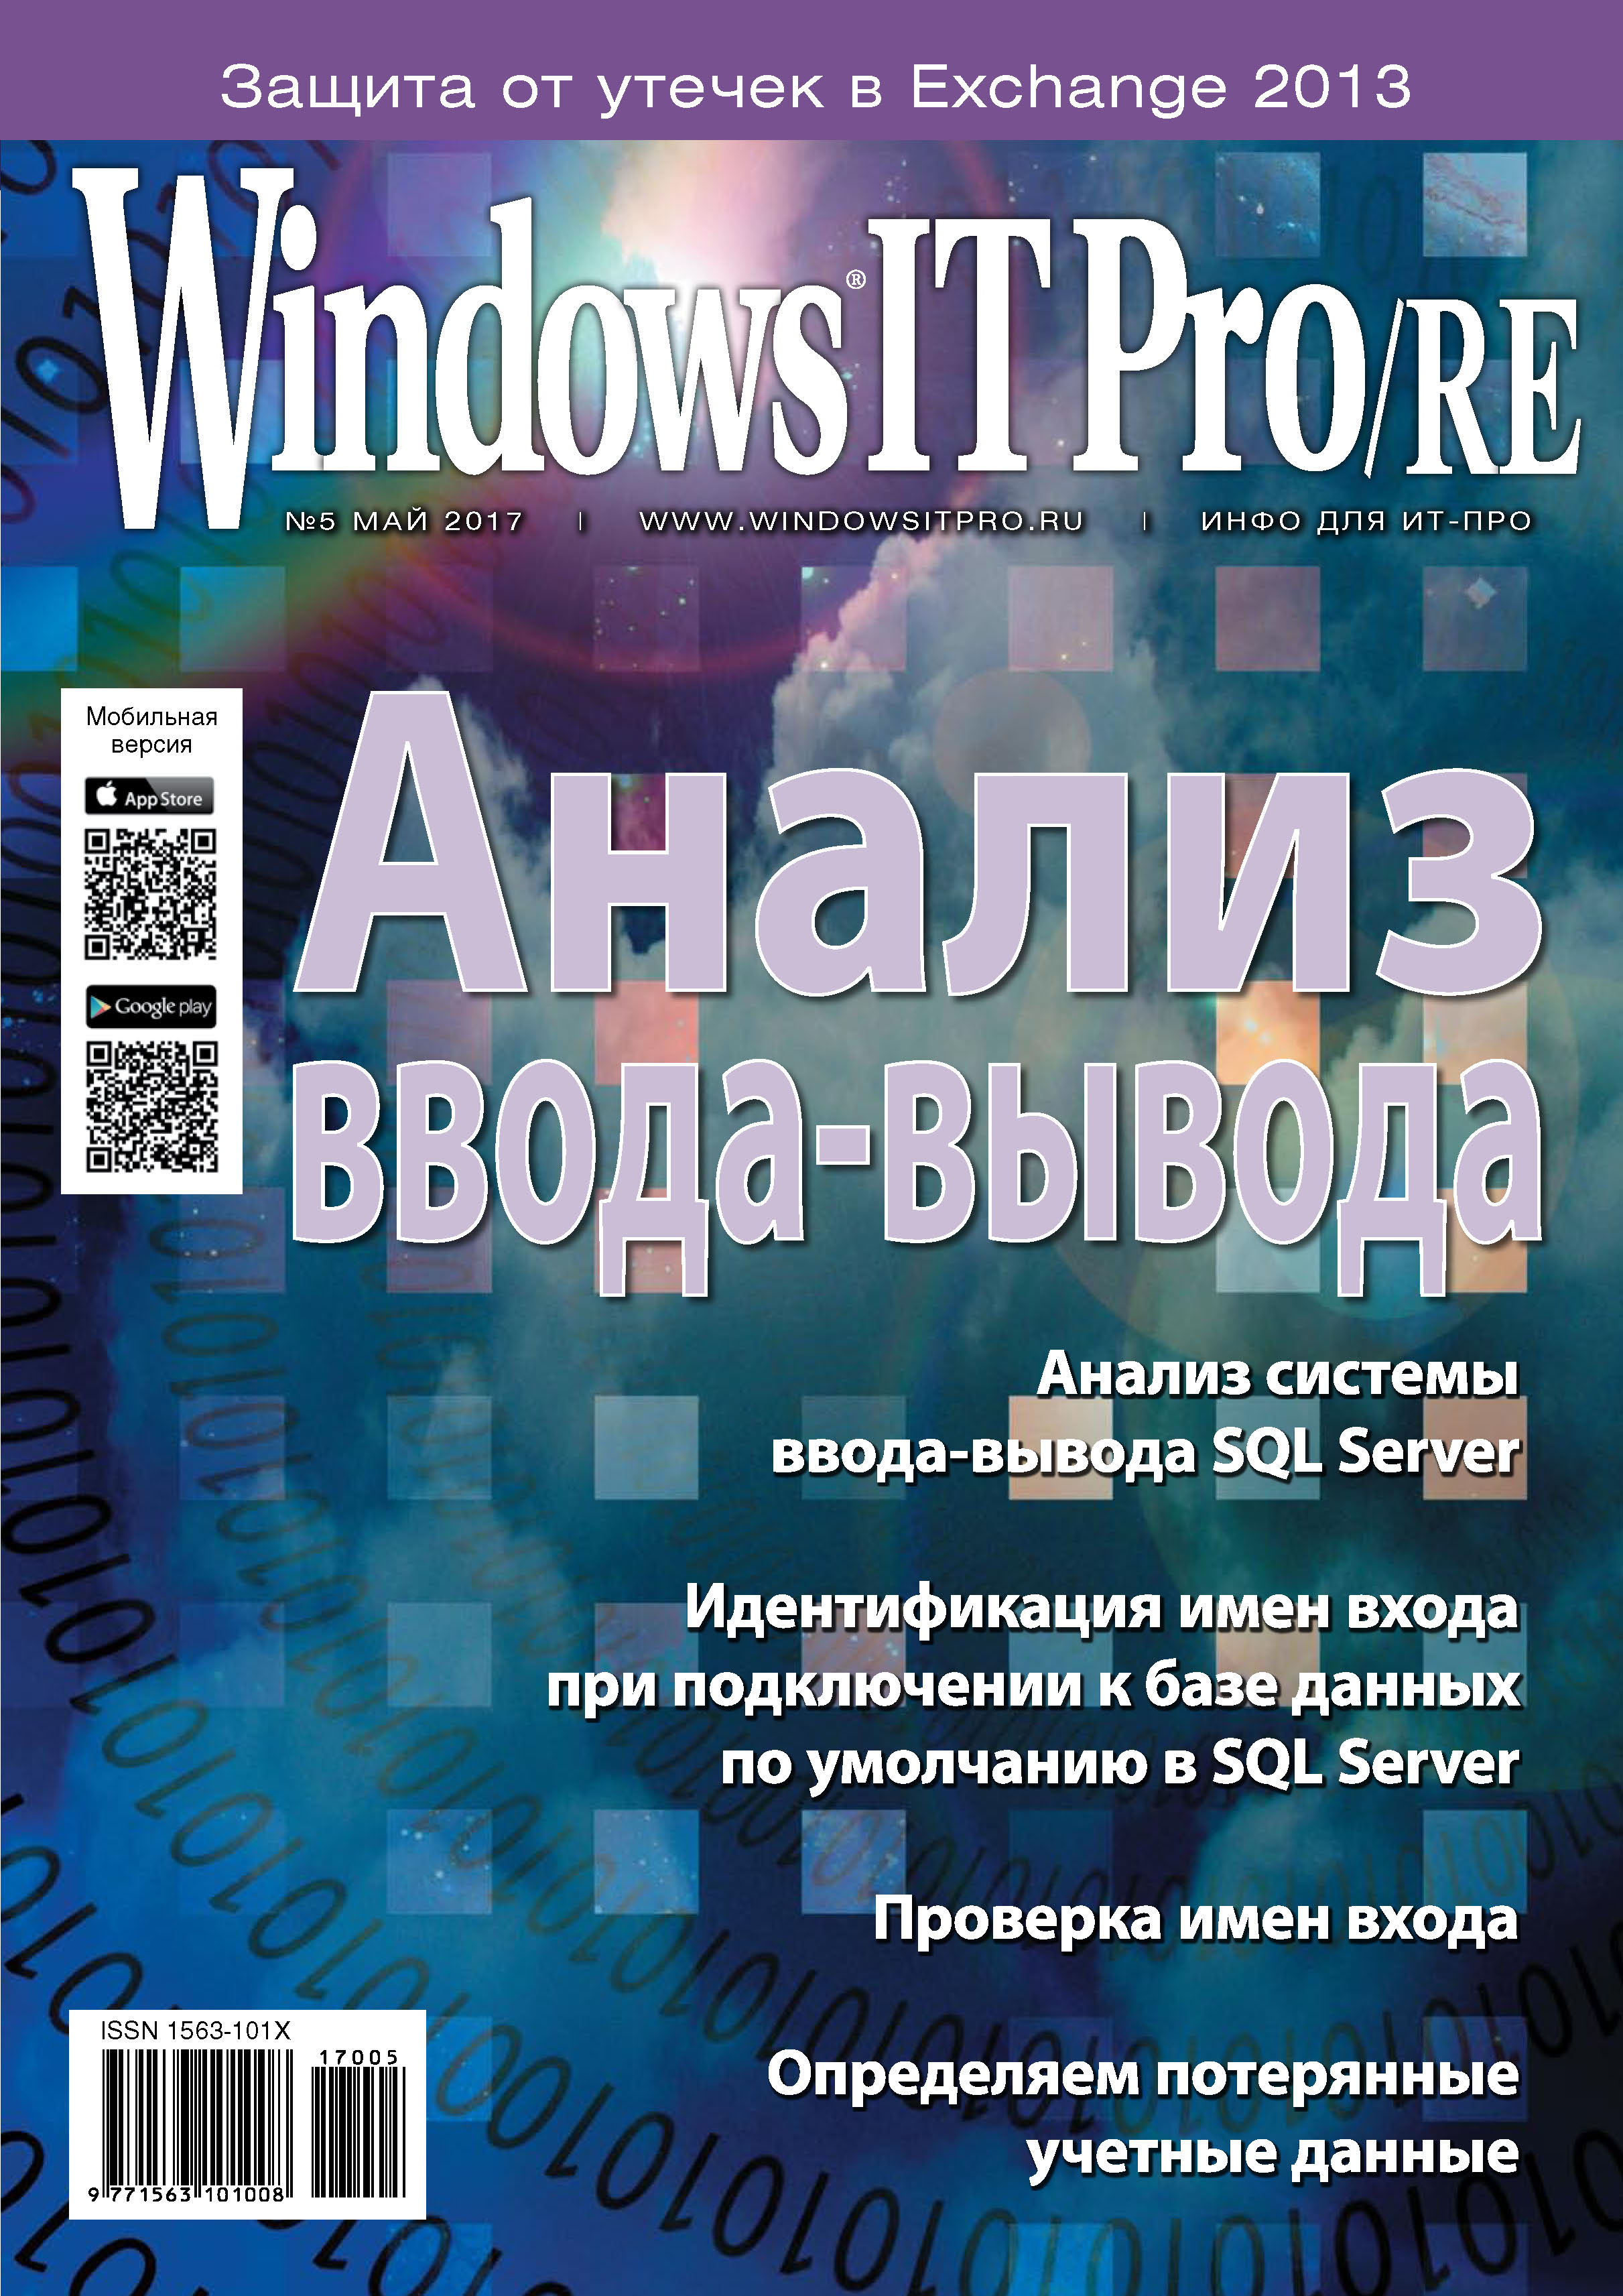 Windows IT Pro/RE№05/2017